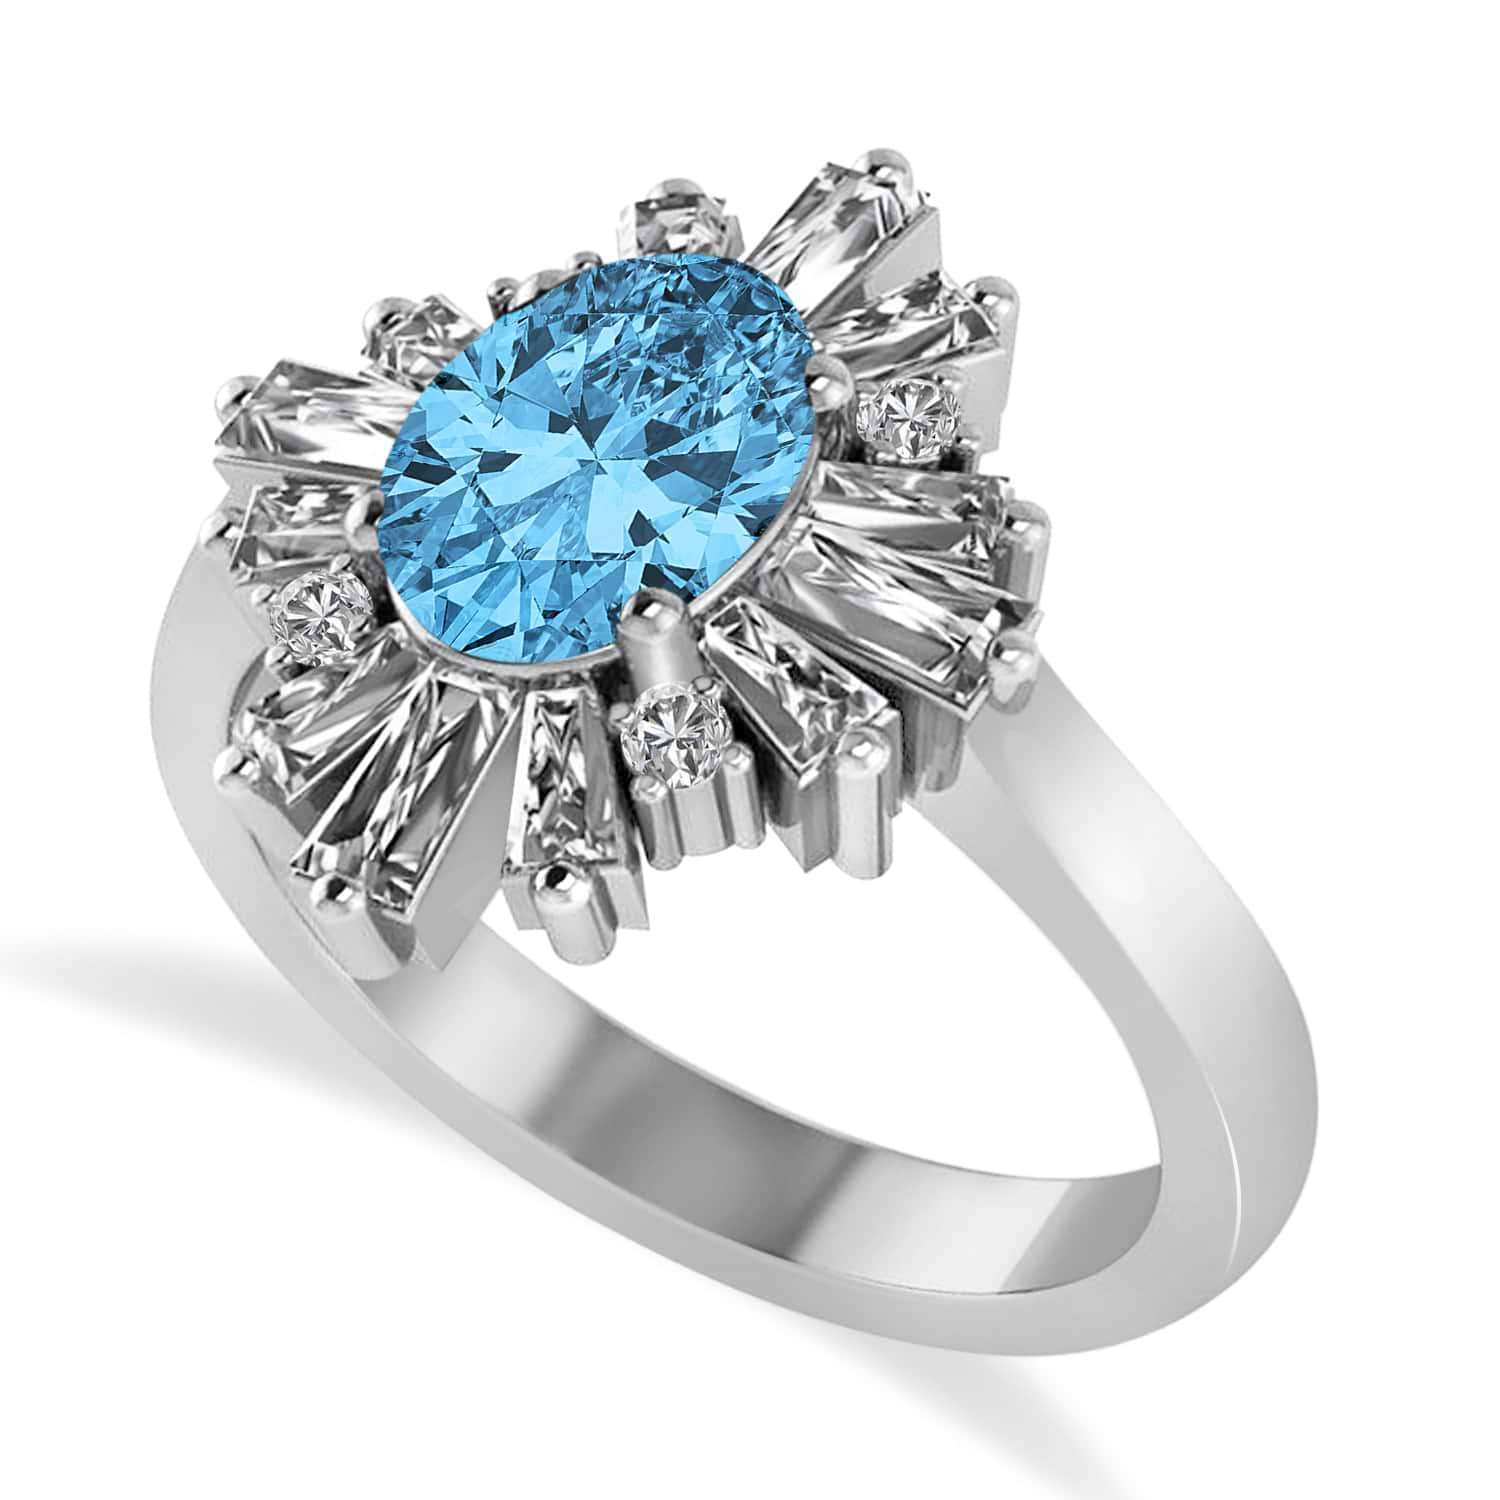 Blue Topaz & Diamond Oval Cut Ballerina Engagement Ring 14k White Gold (3.06 ctw)